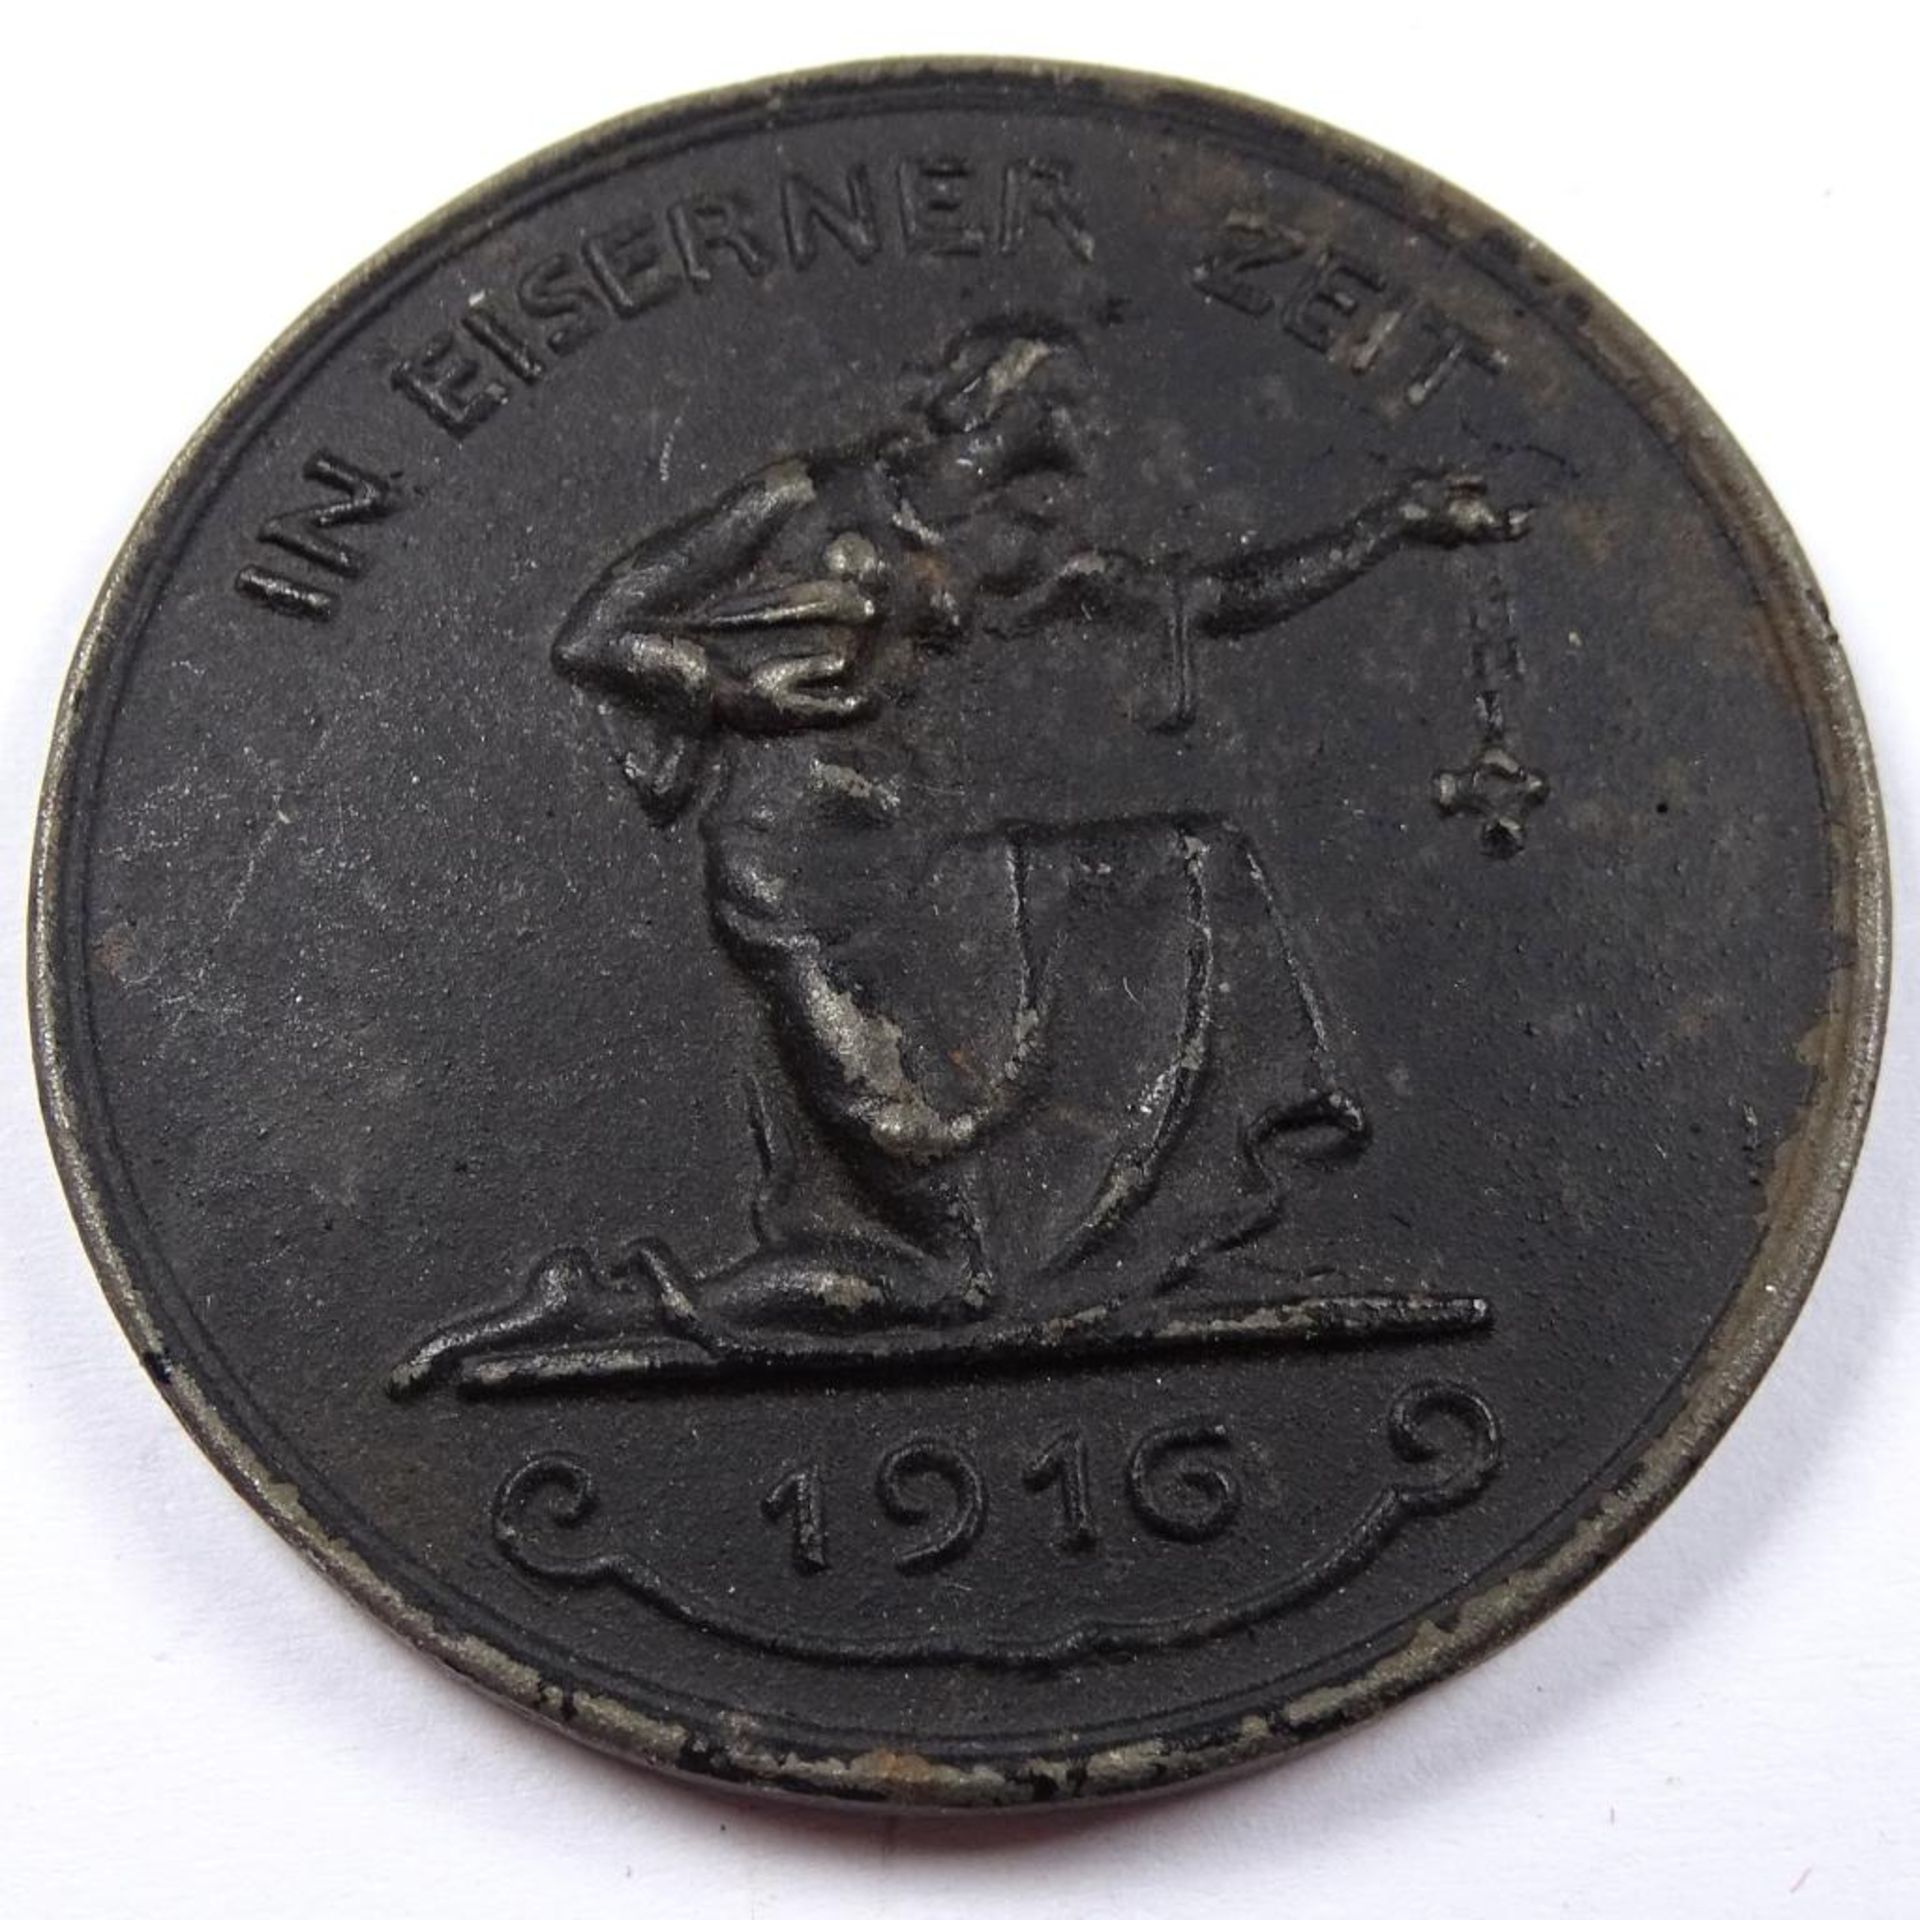 Medaille " In Eiserner Zeit 1916 ""Gold gab ich zur Wehr Eisen nahm ich zur Ehr"